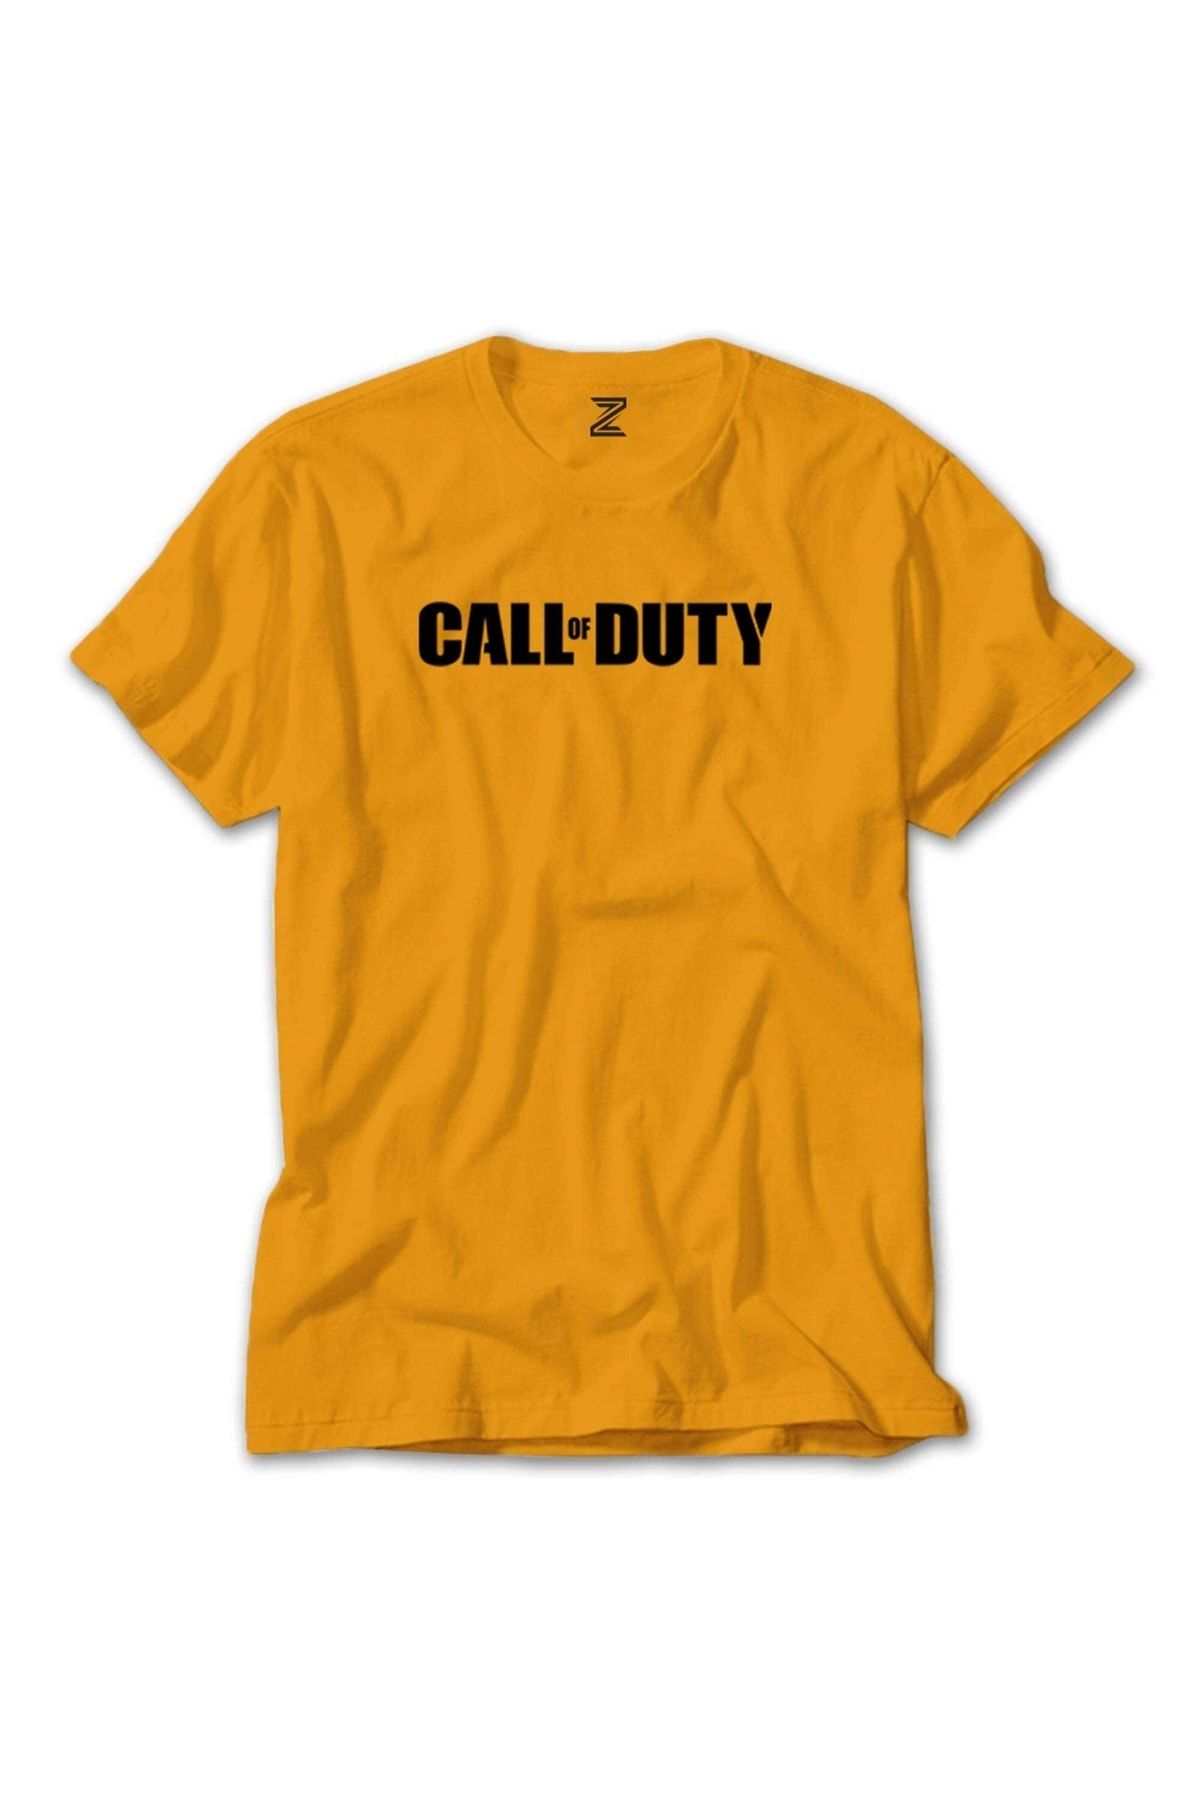 Z zepplin Call Of Duty Black Text Sarı Tişört